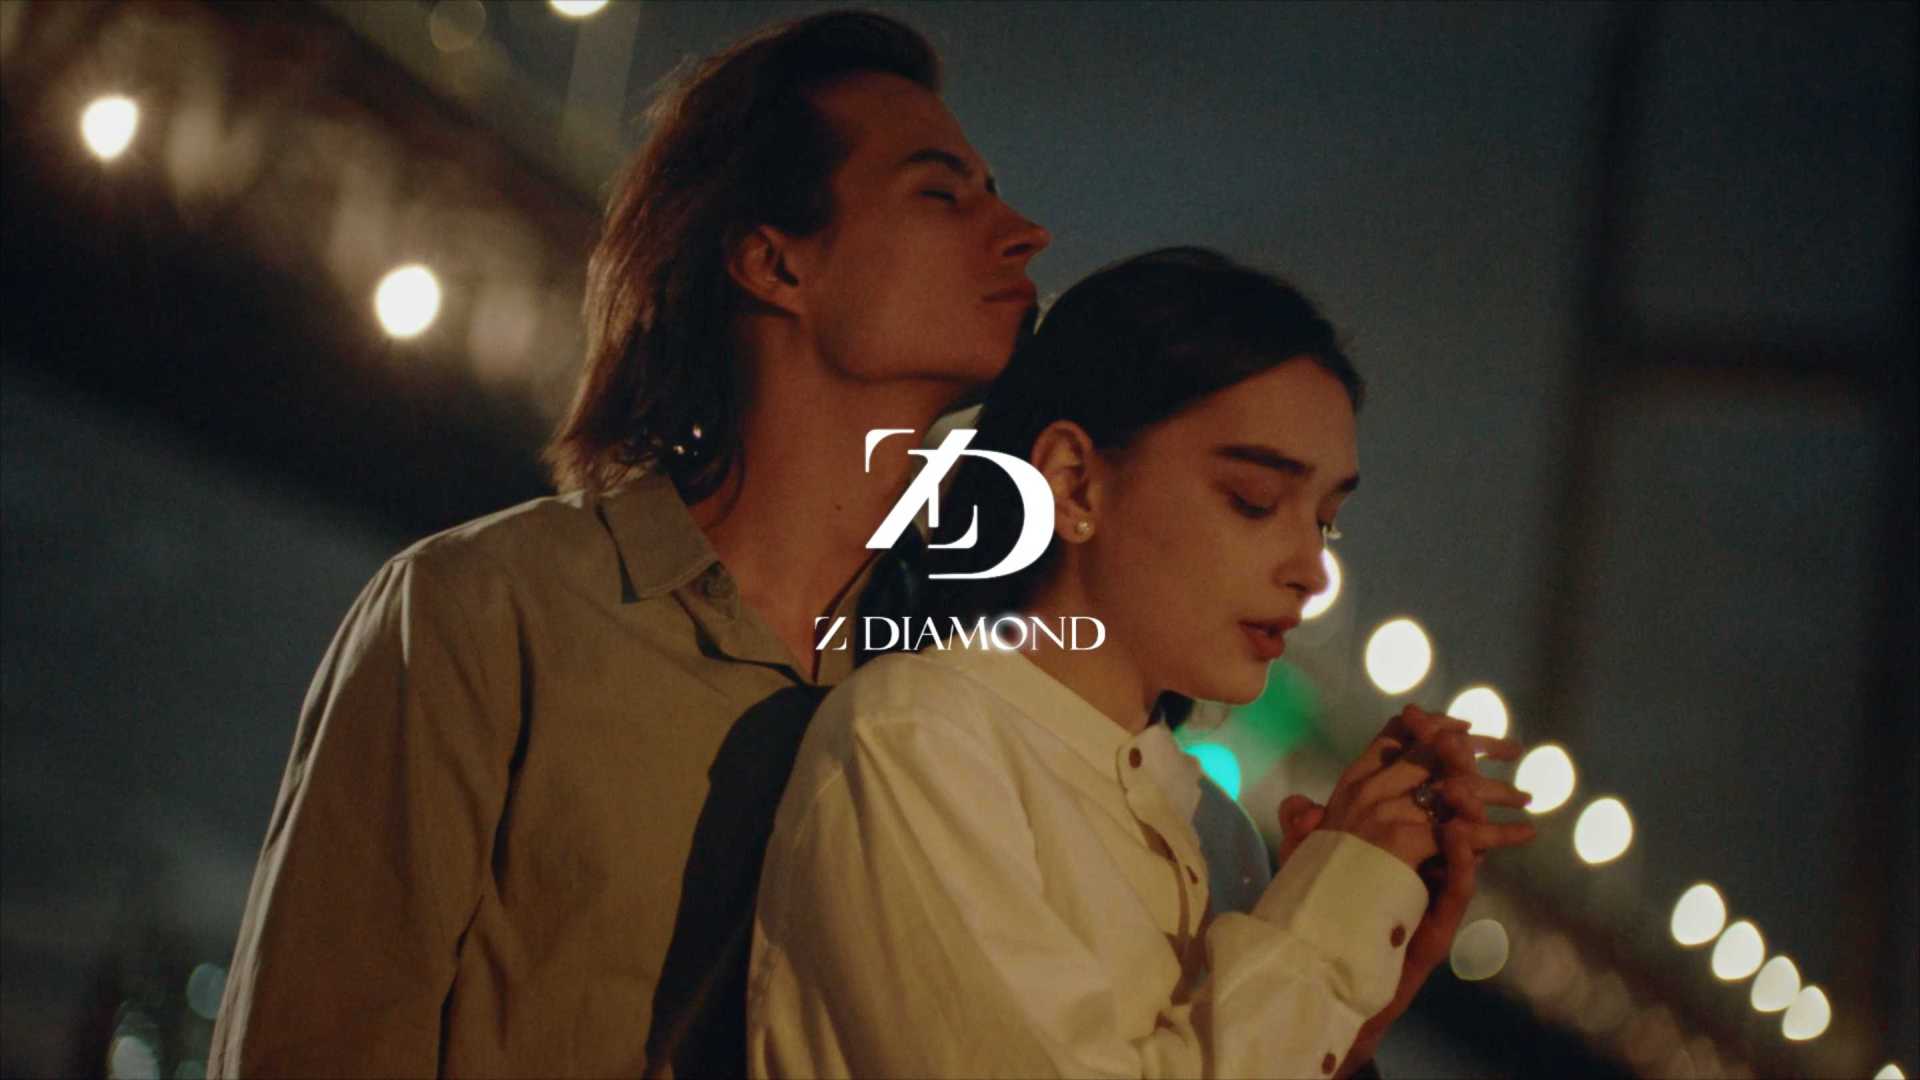 Zdiamond钻石-《珍惜你爱 心心相映》合集